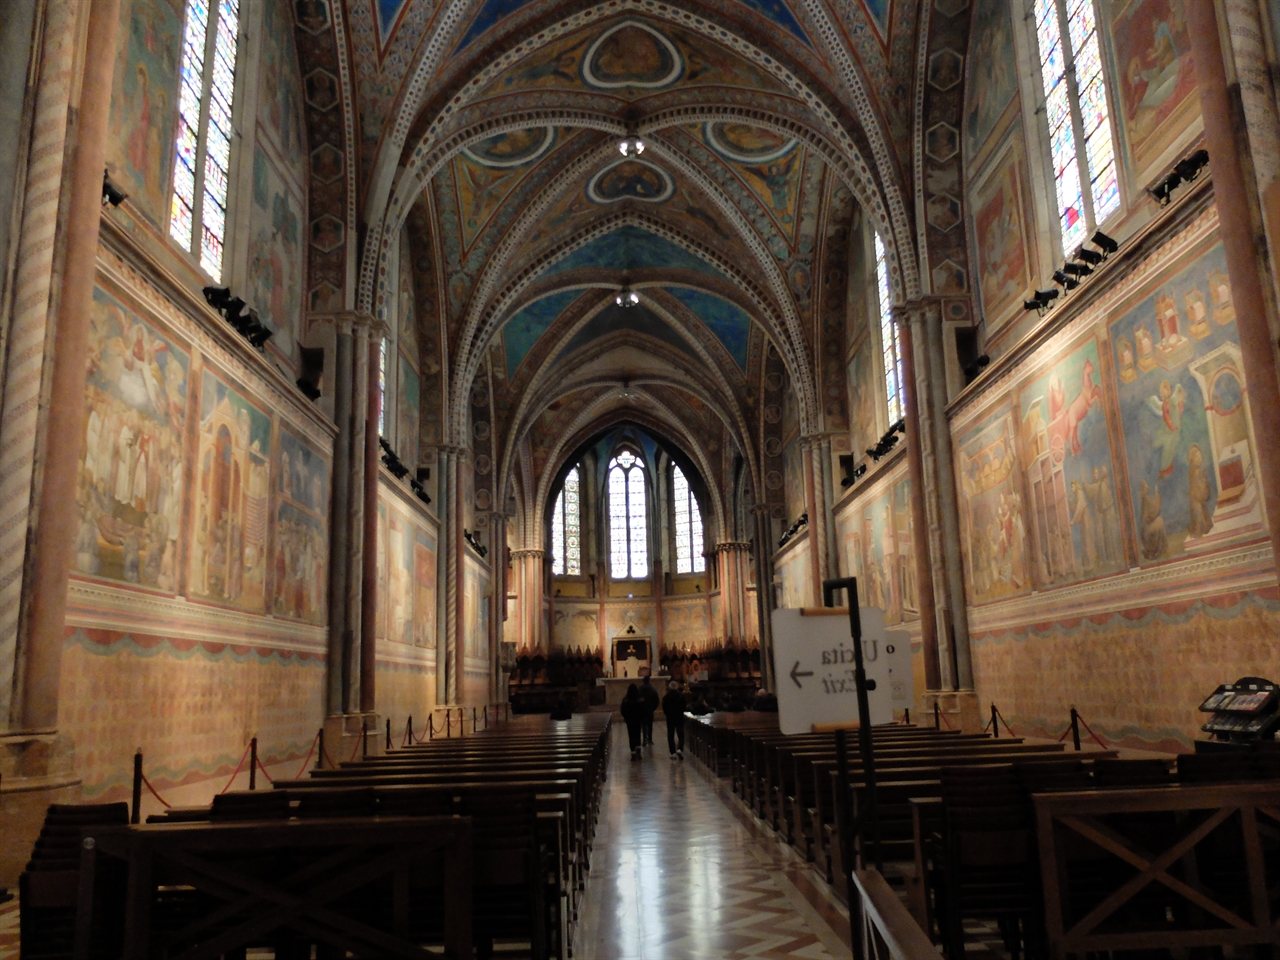 '산 프란체스코 성당'의 본당으로 지오토가 그린 '성 프란체스코의 일생' 프레스코 연작이 벽면을 장식하고 있습니다. 